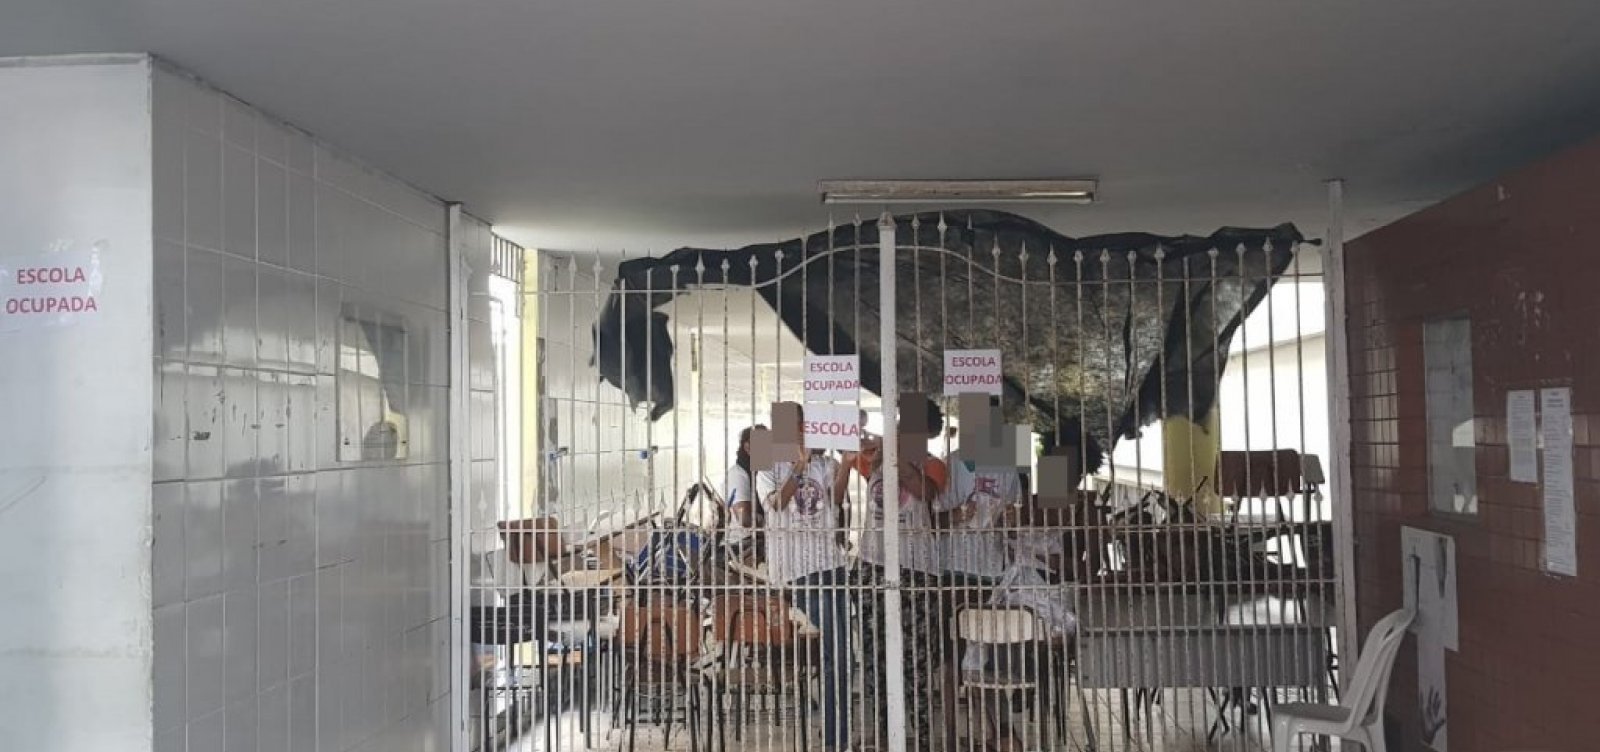 Colégio Odorico Tavares foi desocupado pacificamente, diz governo